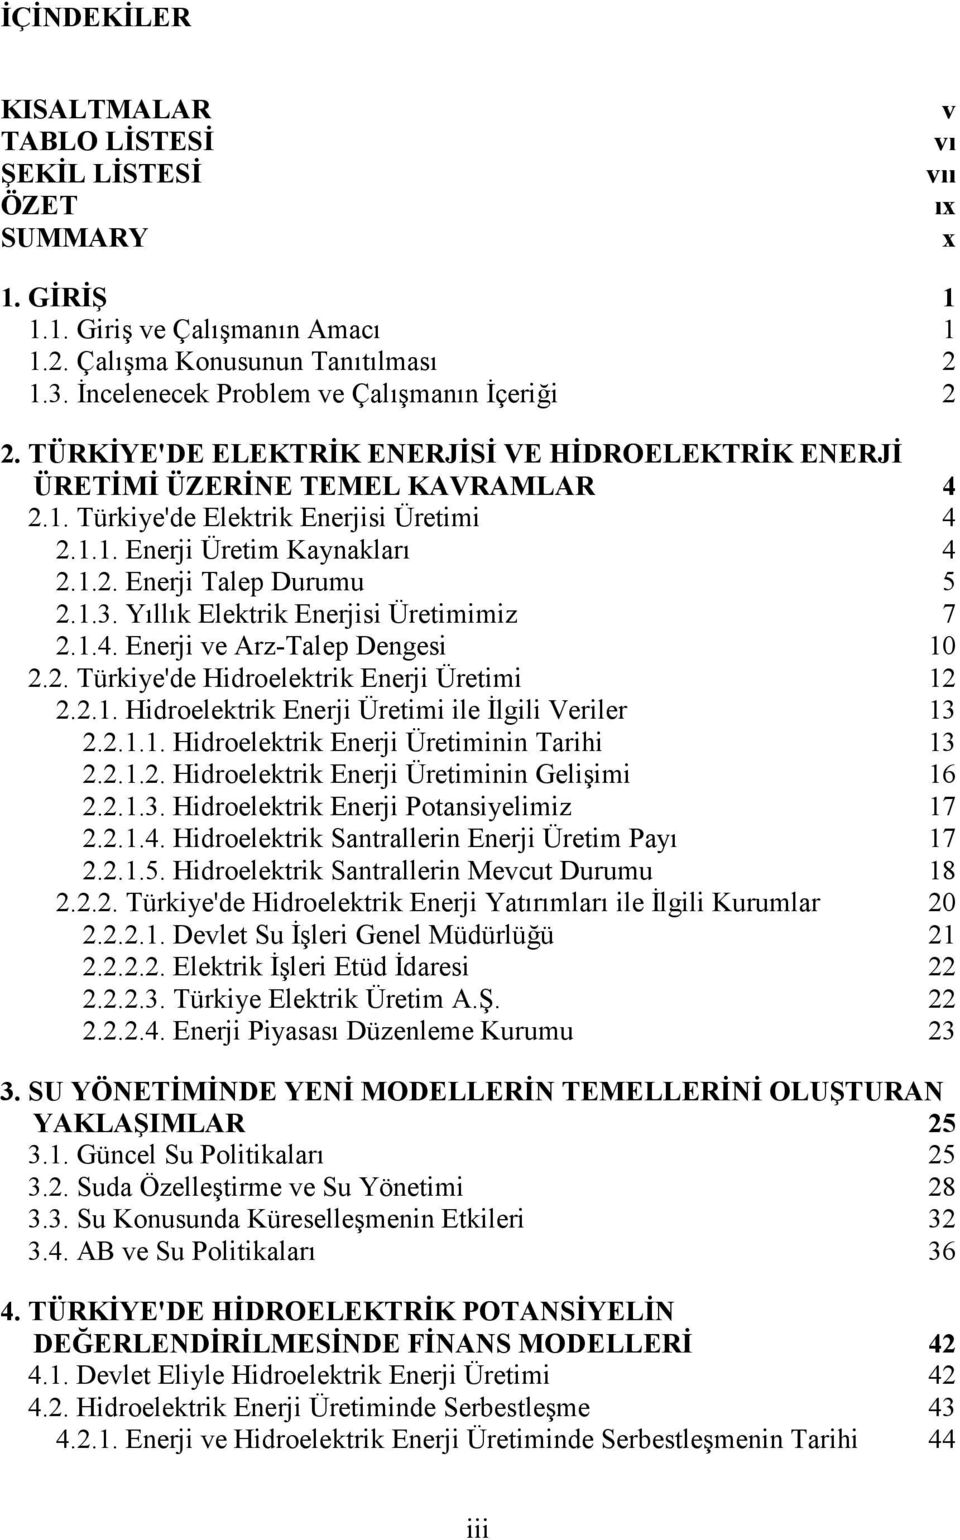 Yllk Elektrik Enerjisi Üretimimiz 7 2.1.4. Enerji ve Arz-Talep Dengesi 10 2.2. Türkiye'de Hidroelektrik Enerji Üretimi 12 2.2.1. Hidroelektrik Enerji Üretimi ile *lgili Veriler 13 2.2.1.1. Hidroelektrik Enerji Üretiminin Tarihi 13 2.